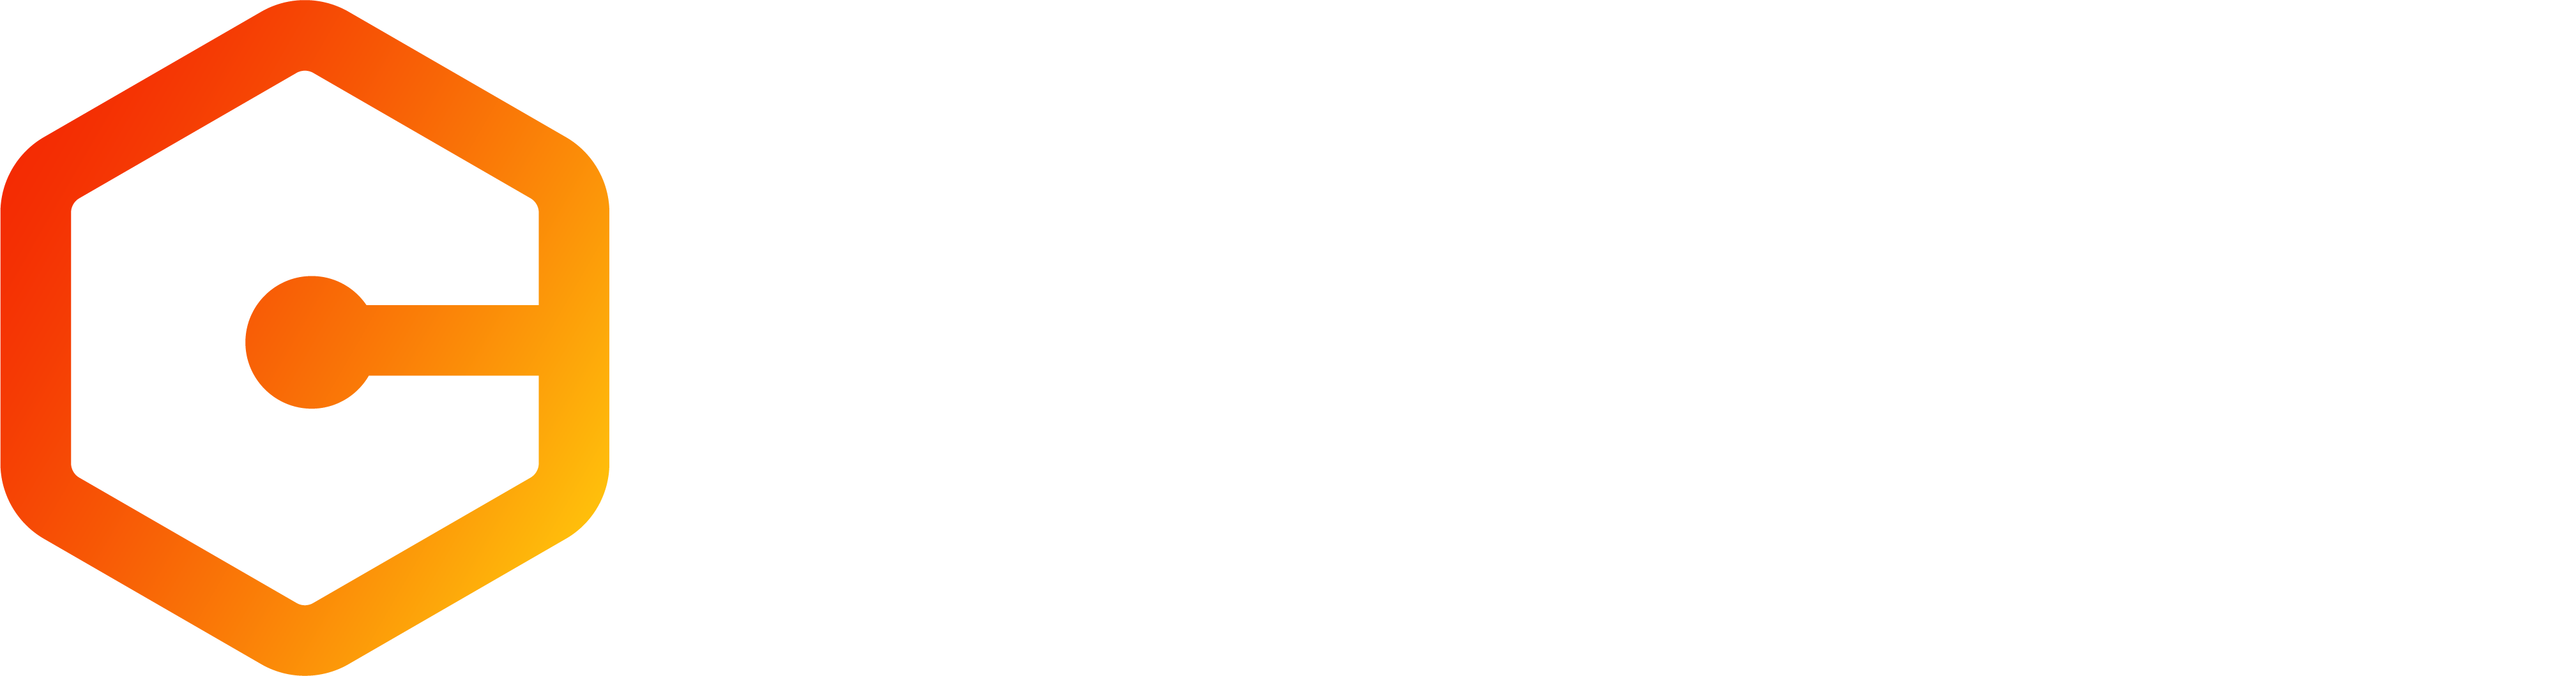 cldin logo